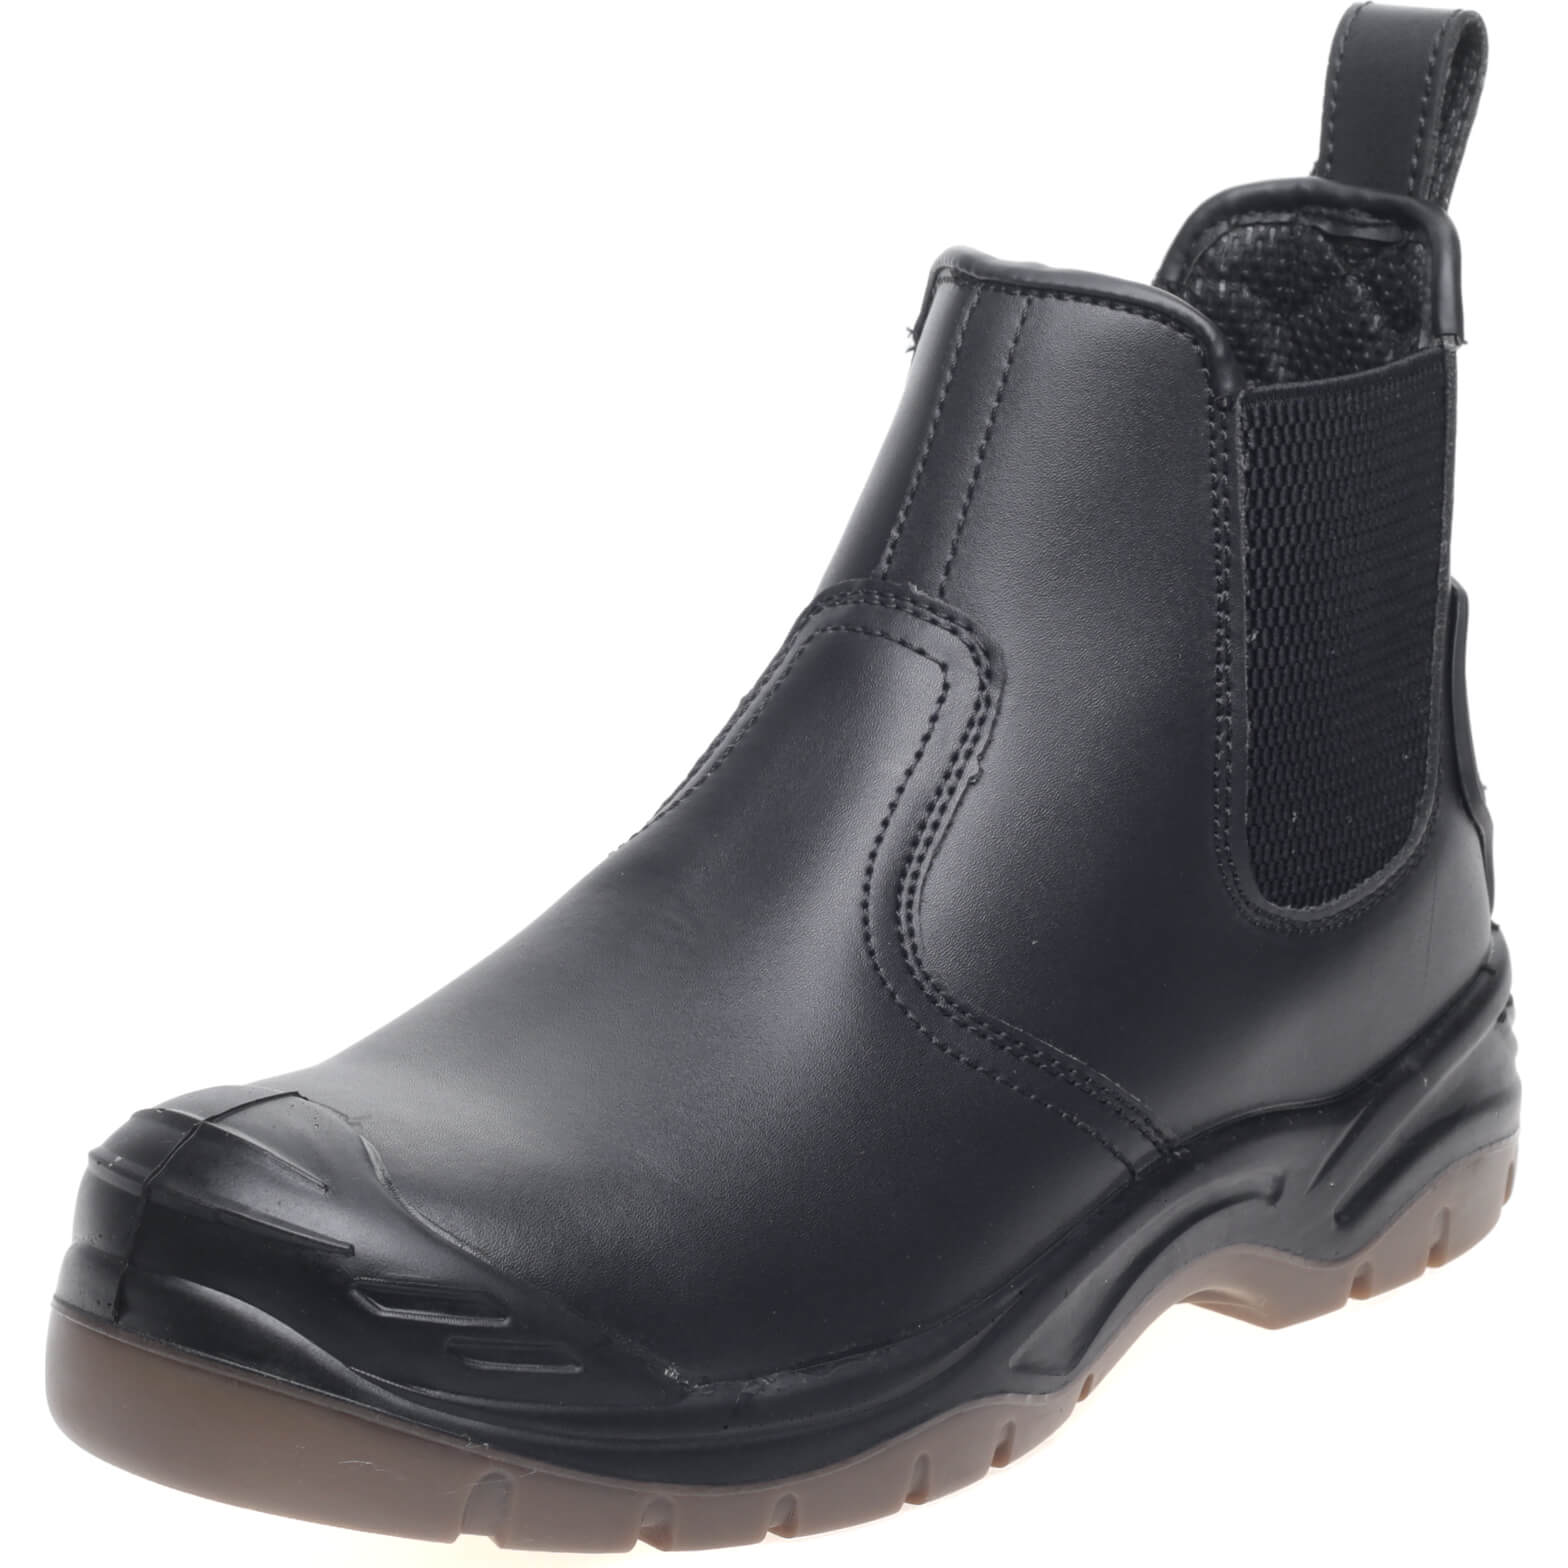 Apache AP71 Safety Dealer Boots Black Size 6